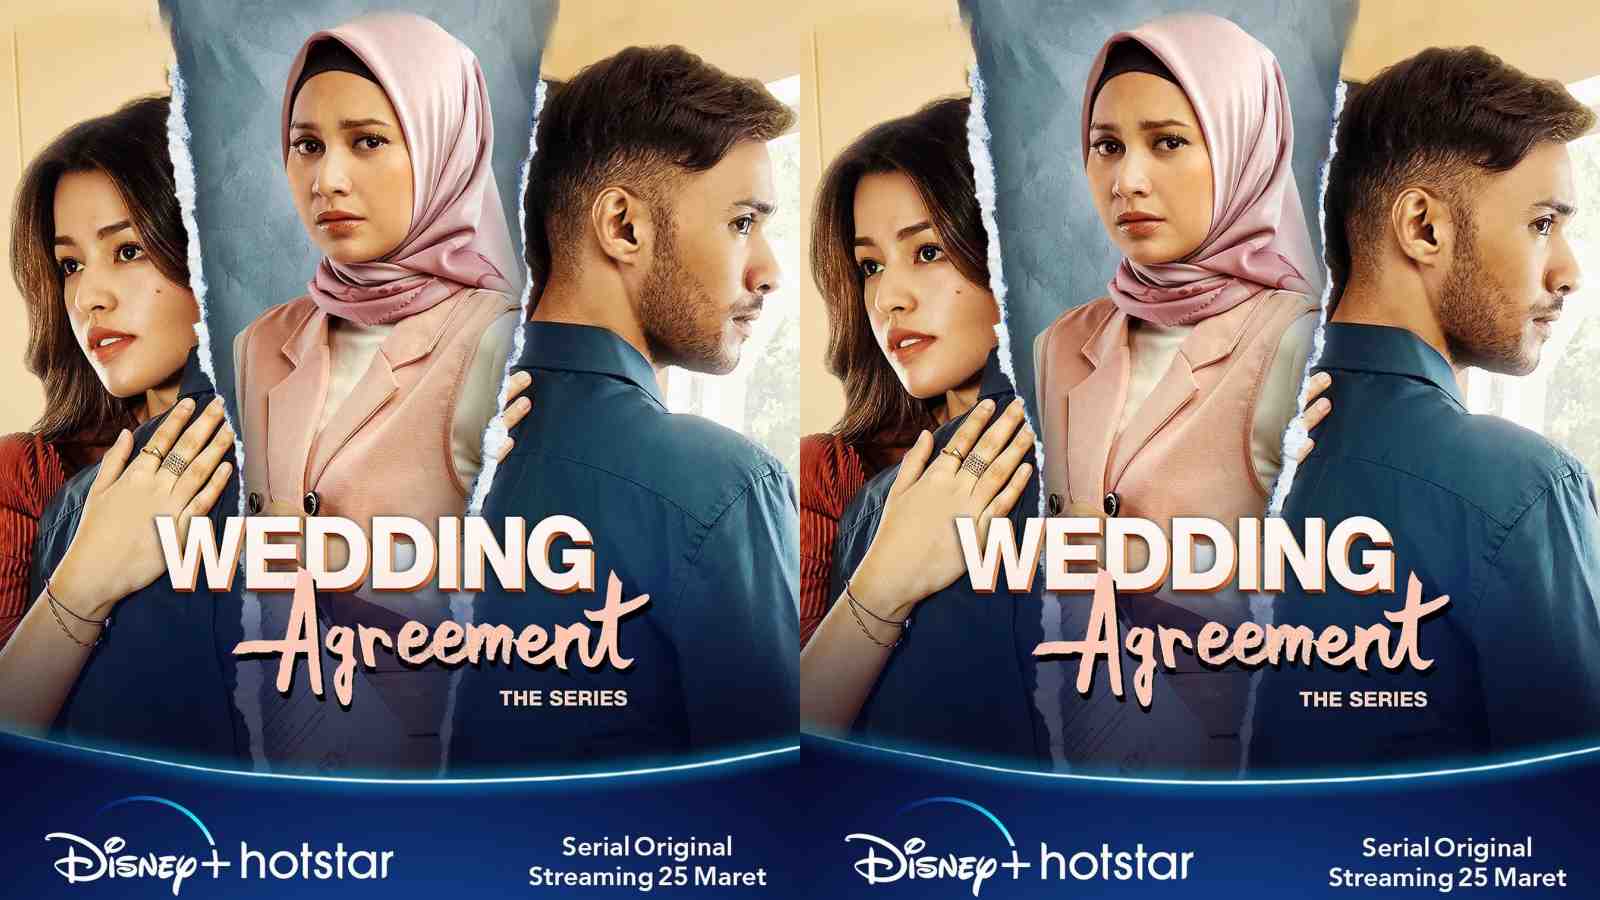 Sinopsis dan Daftar Pemain Wedding Agreement The Series, Tayang 25 Maret 2022 di Disney+ Hotstar